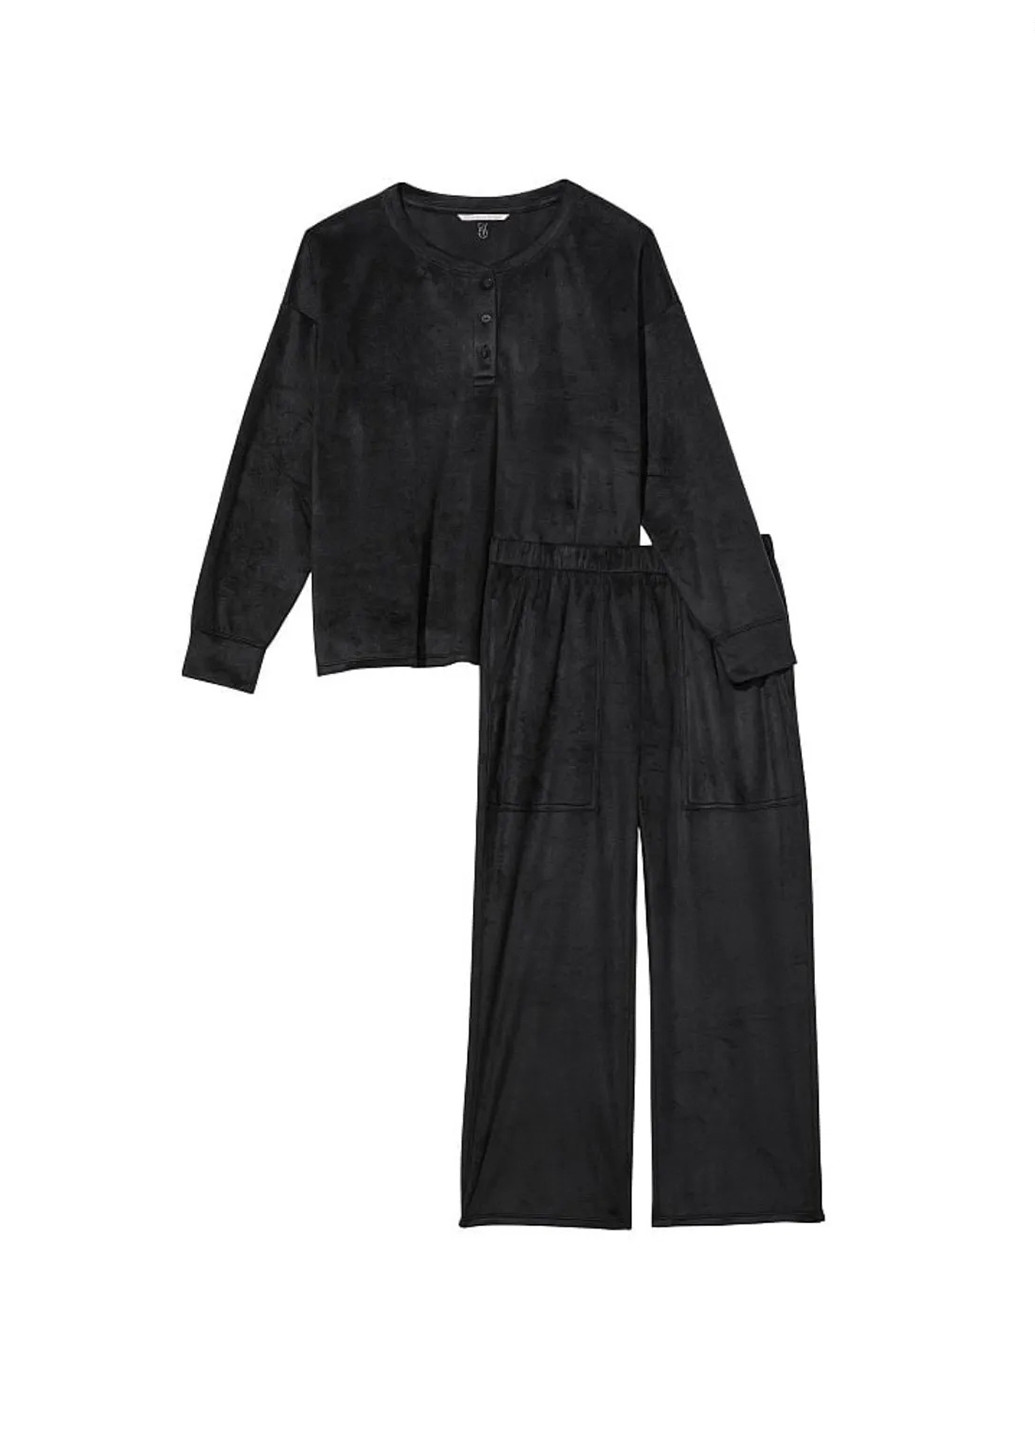 Черная всесезон пижама (свитшот, брюки) свитшот + брюки Victoria's Secret